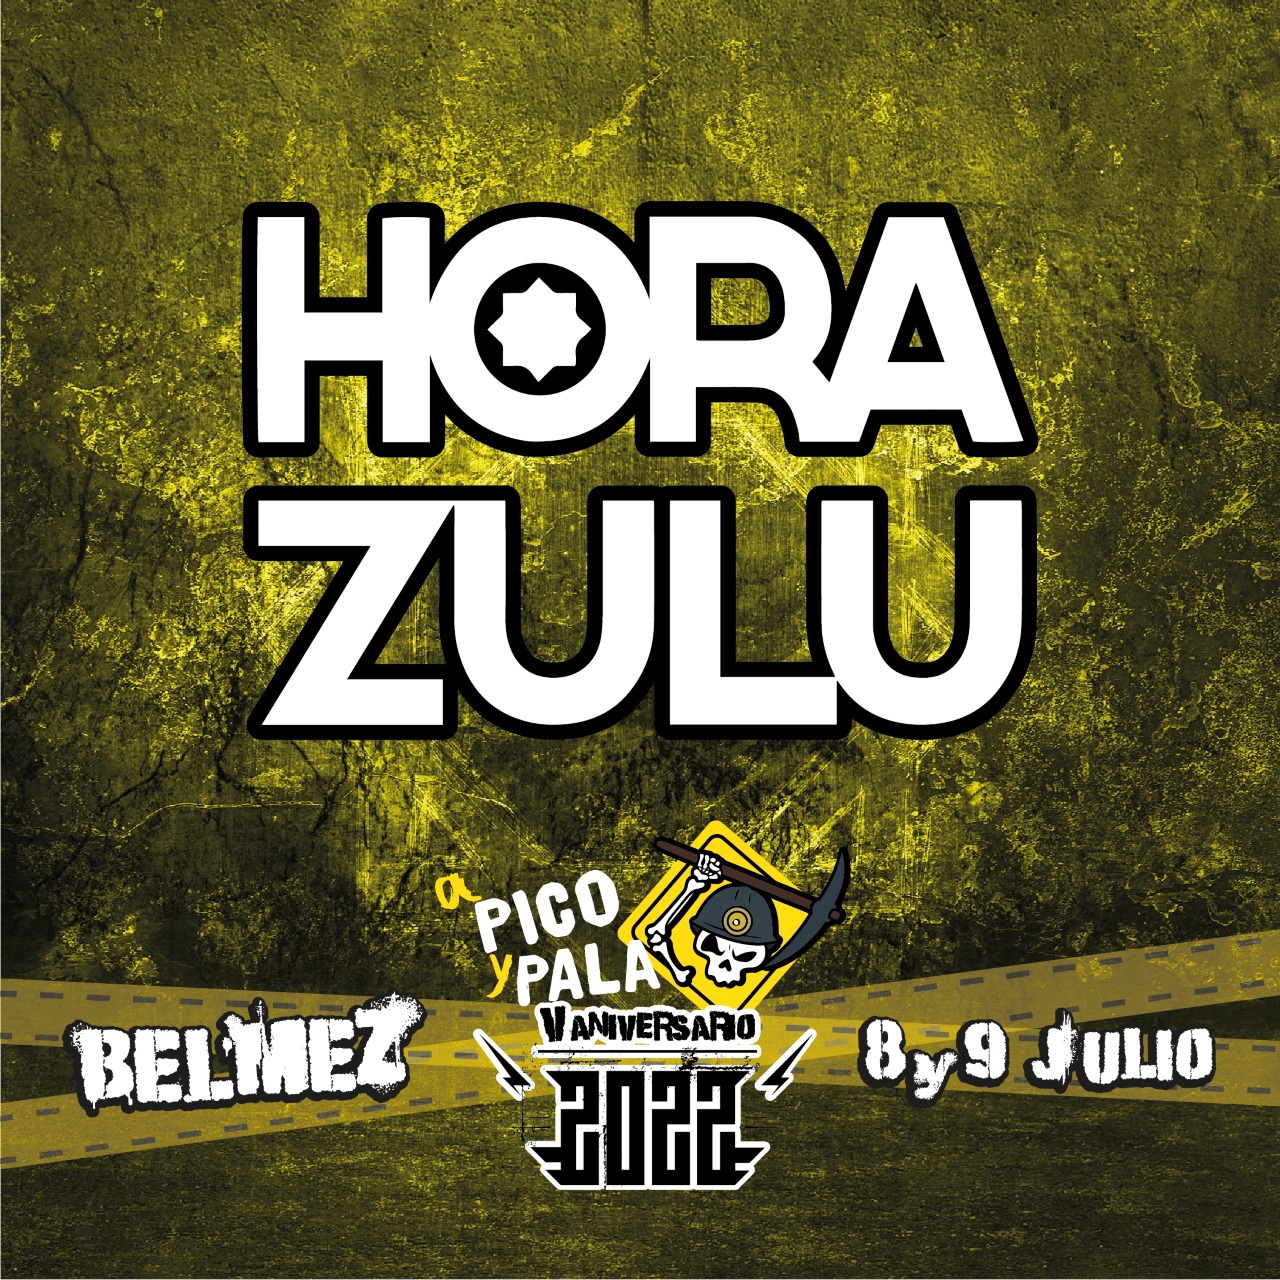 Festival A Pico Y Pala: Hora Zulu es su nueva confirmación